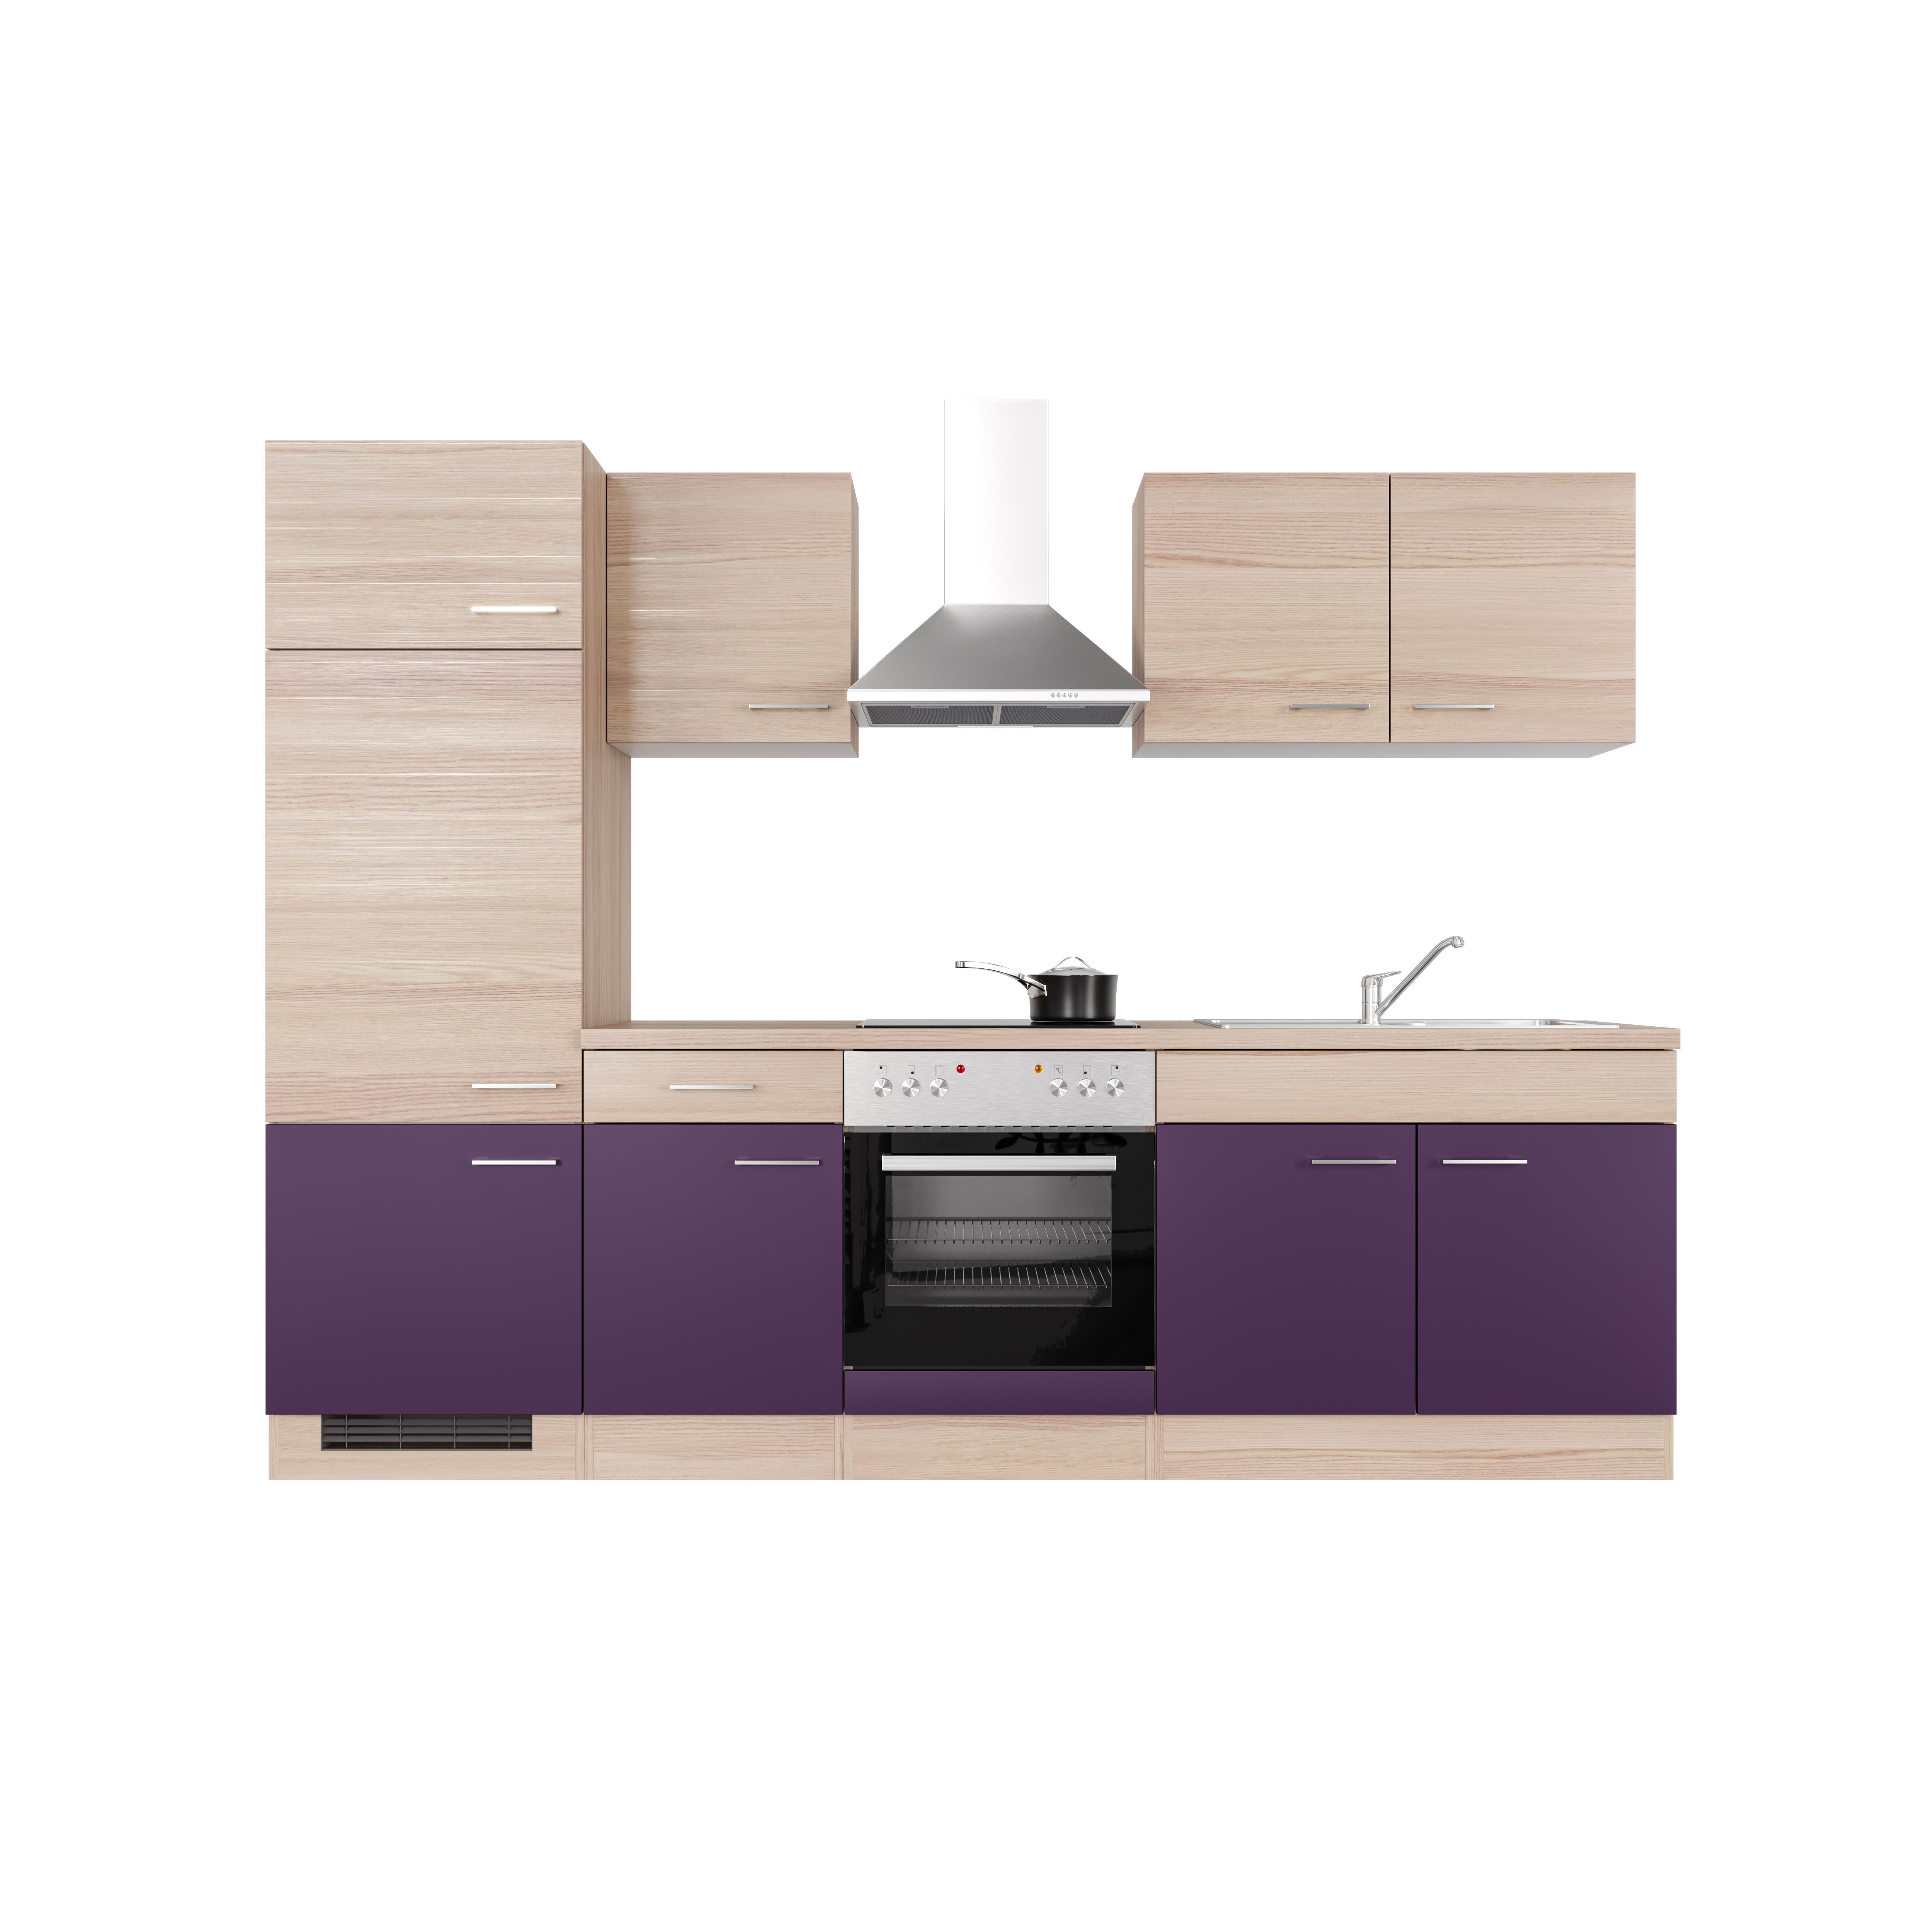 Küchenzeile mit E-Geräten - 270 cm breit - Akazie Aubergine – Otto